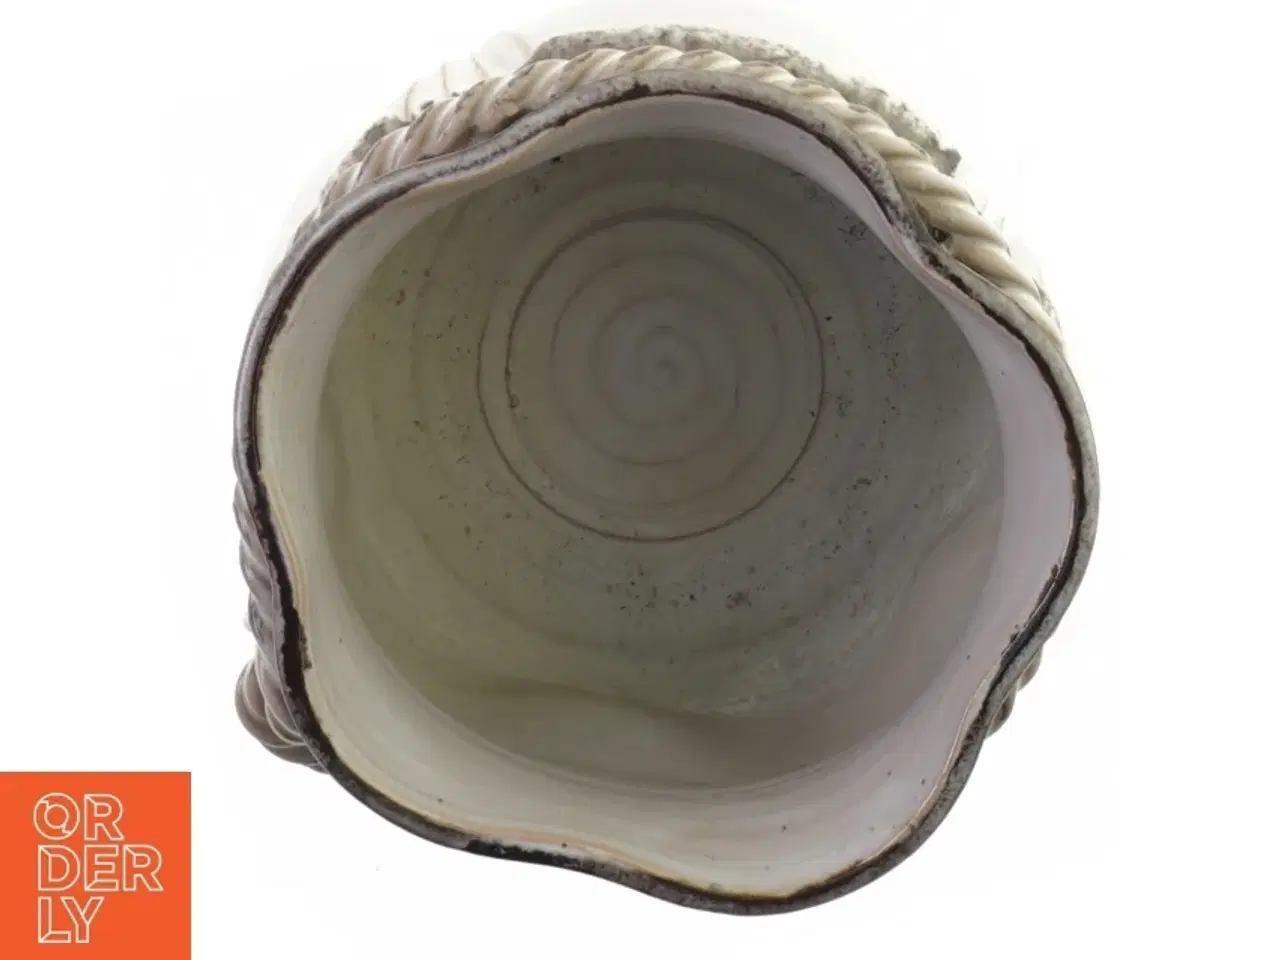 Billede 2 - Urtepotte i keramik (str. 15 x 12 cm)